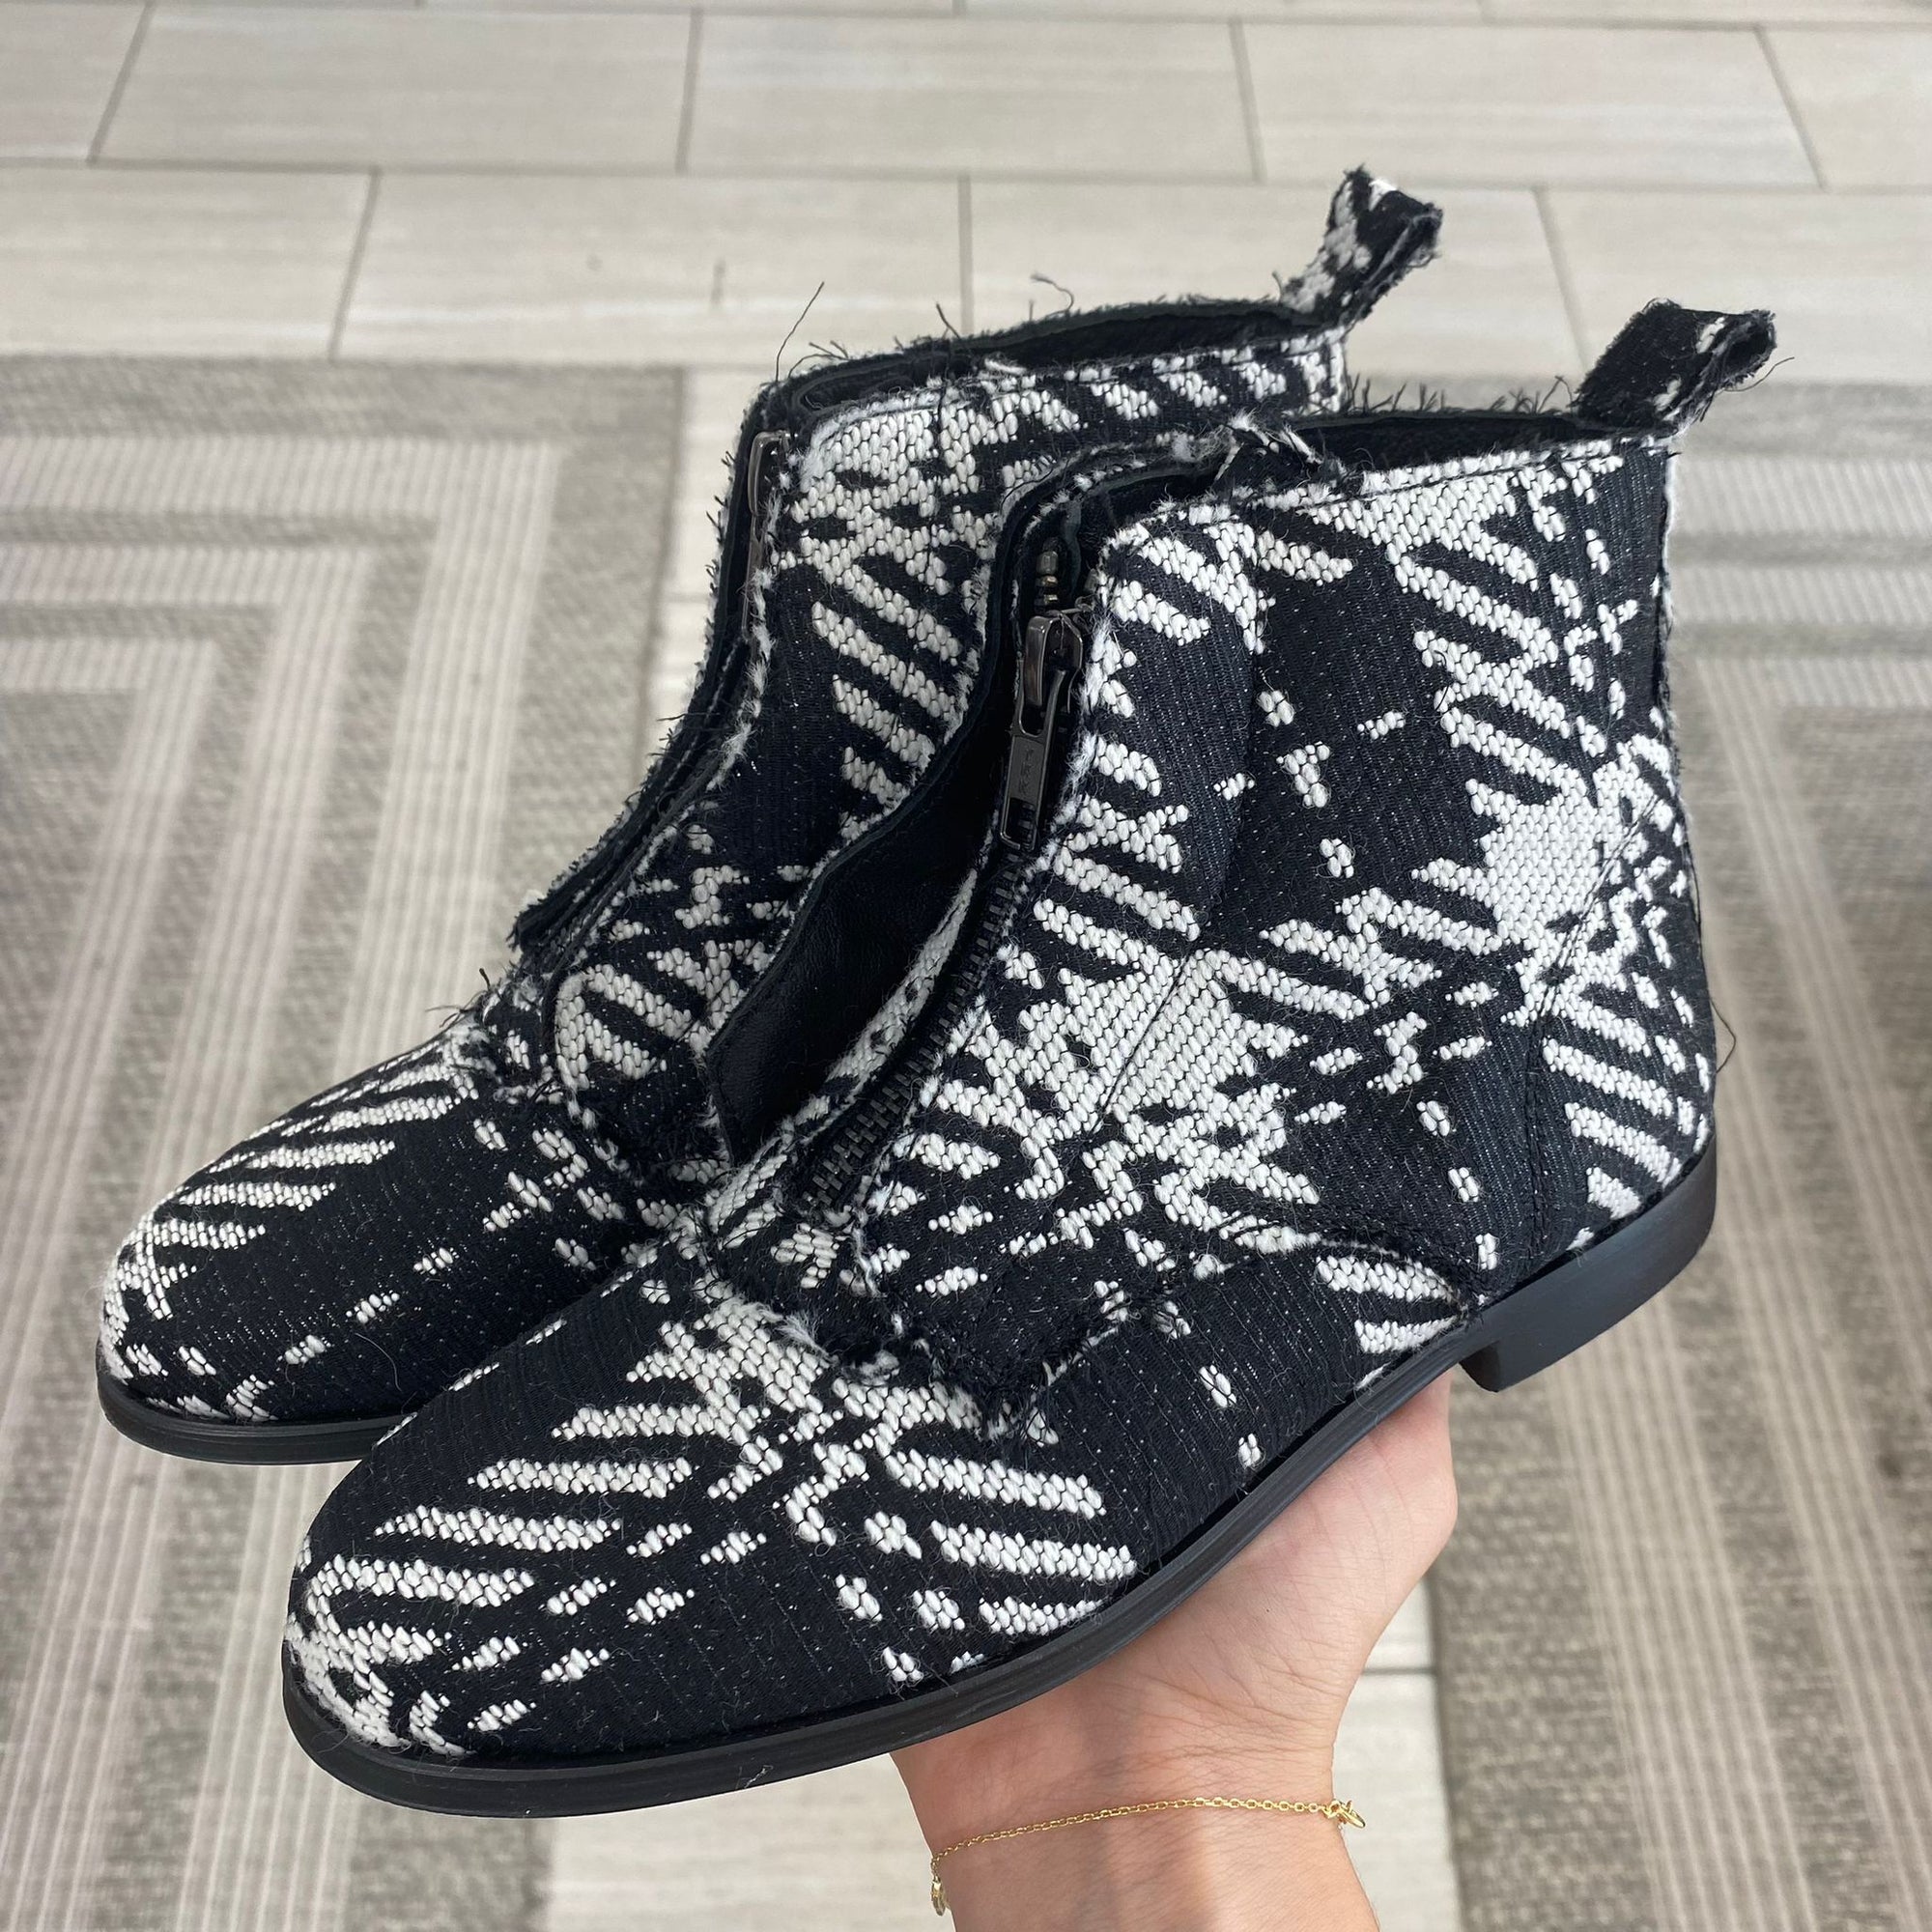 Blublonc Black and White Plaid Front Zipper Bootie-Tassel Children Shoes